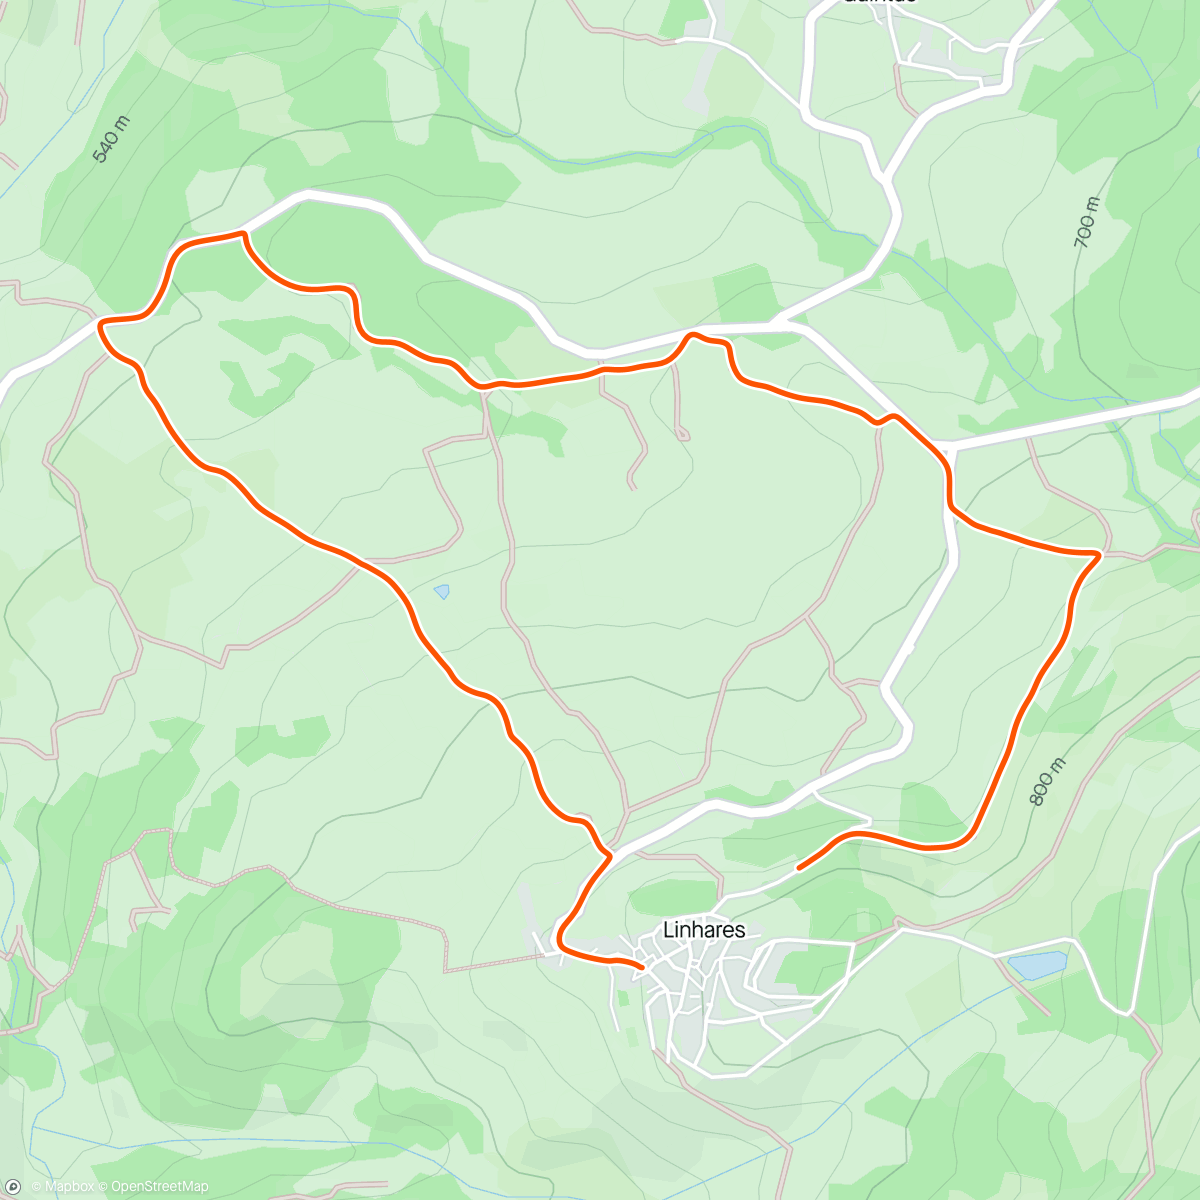 Mappa dell'attività Volta de bicicleta de montanha matinal